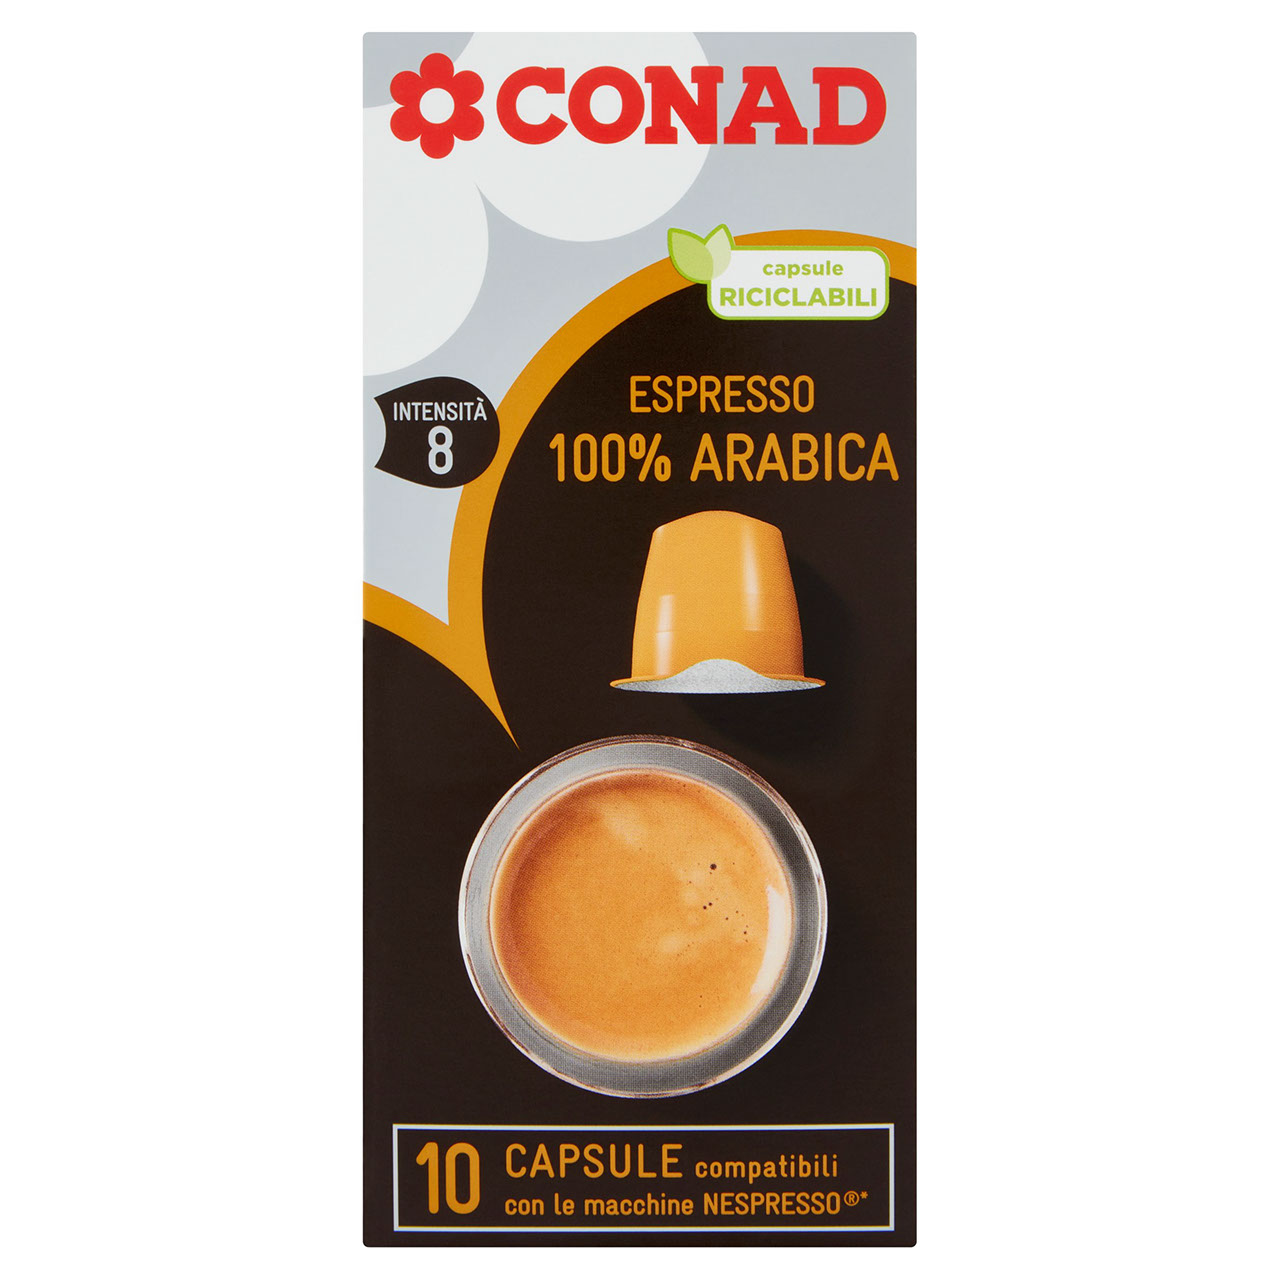 Capsule Arabica per macchine Nespresso 50 g Conad